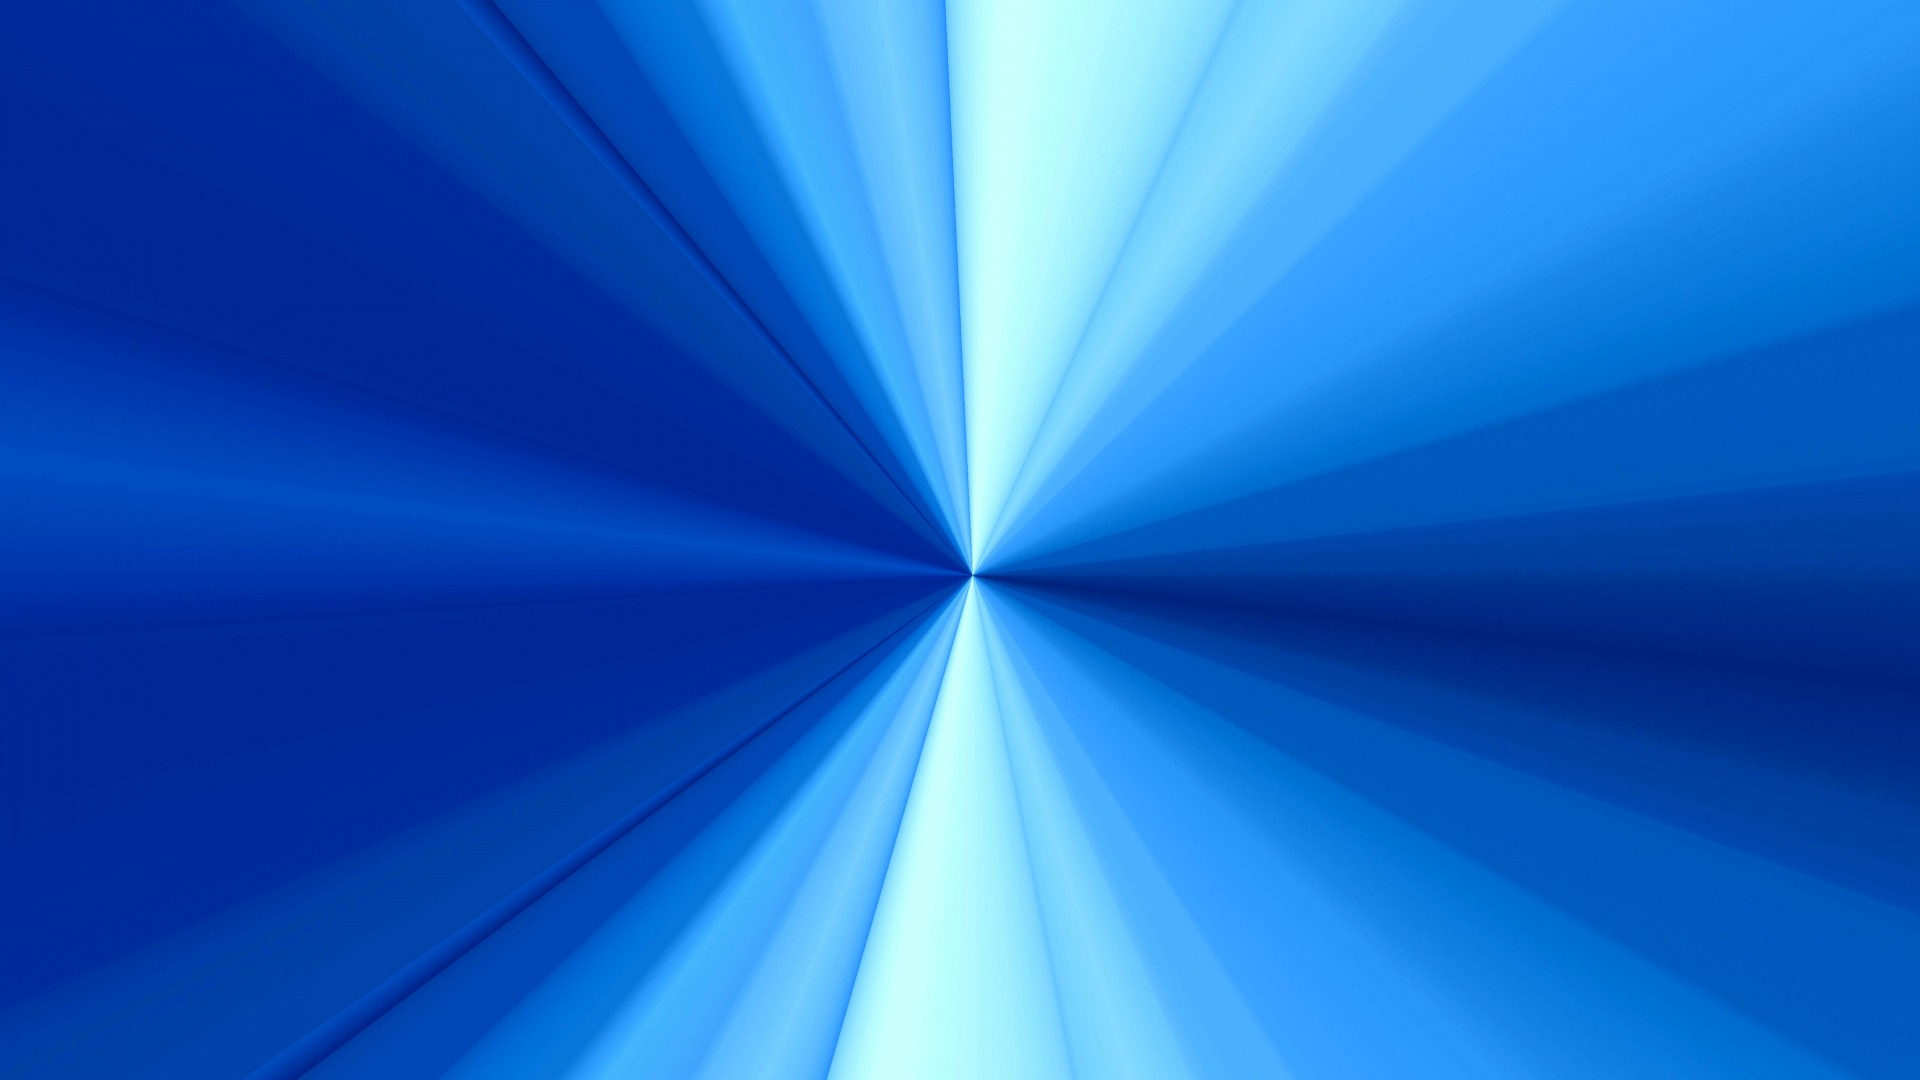 Hình nền Nền Sóng Xanh Powerpoint Màu Xanh Da Trời Làn Sóng Background  Vector để tải xuống miễn phí  Pngtree